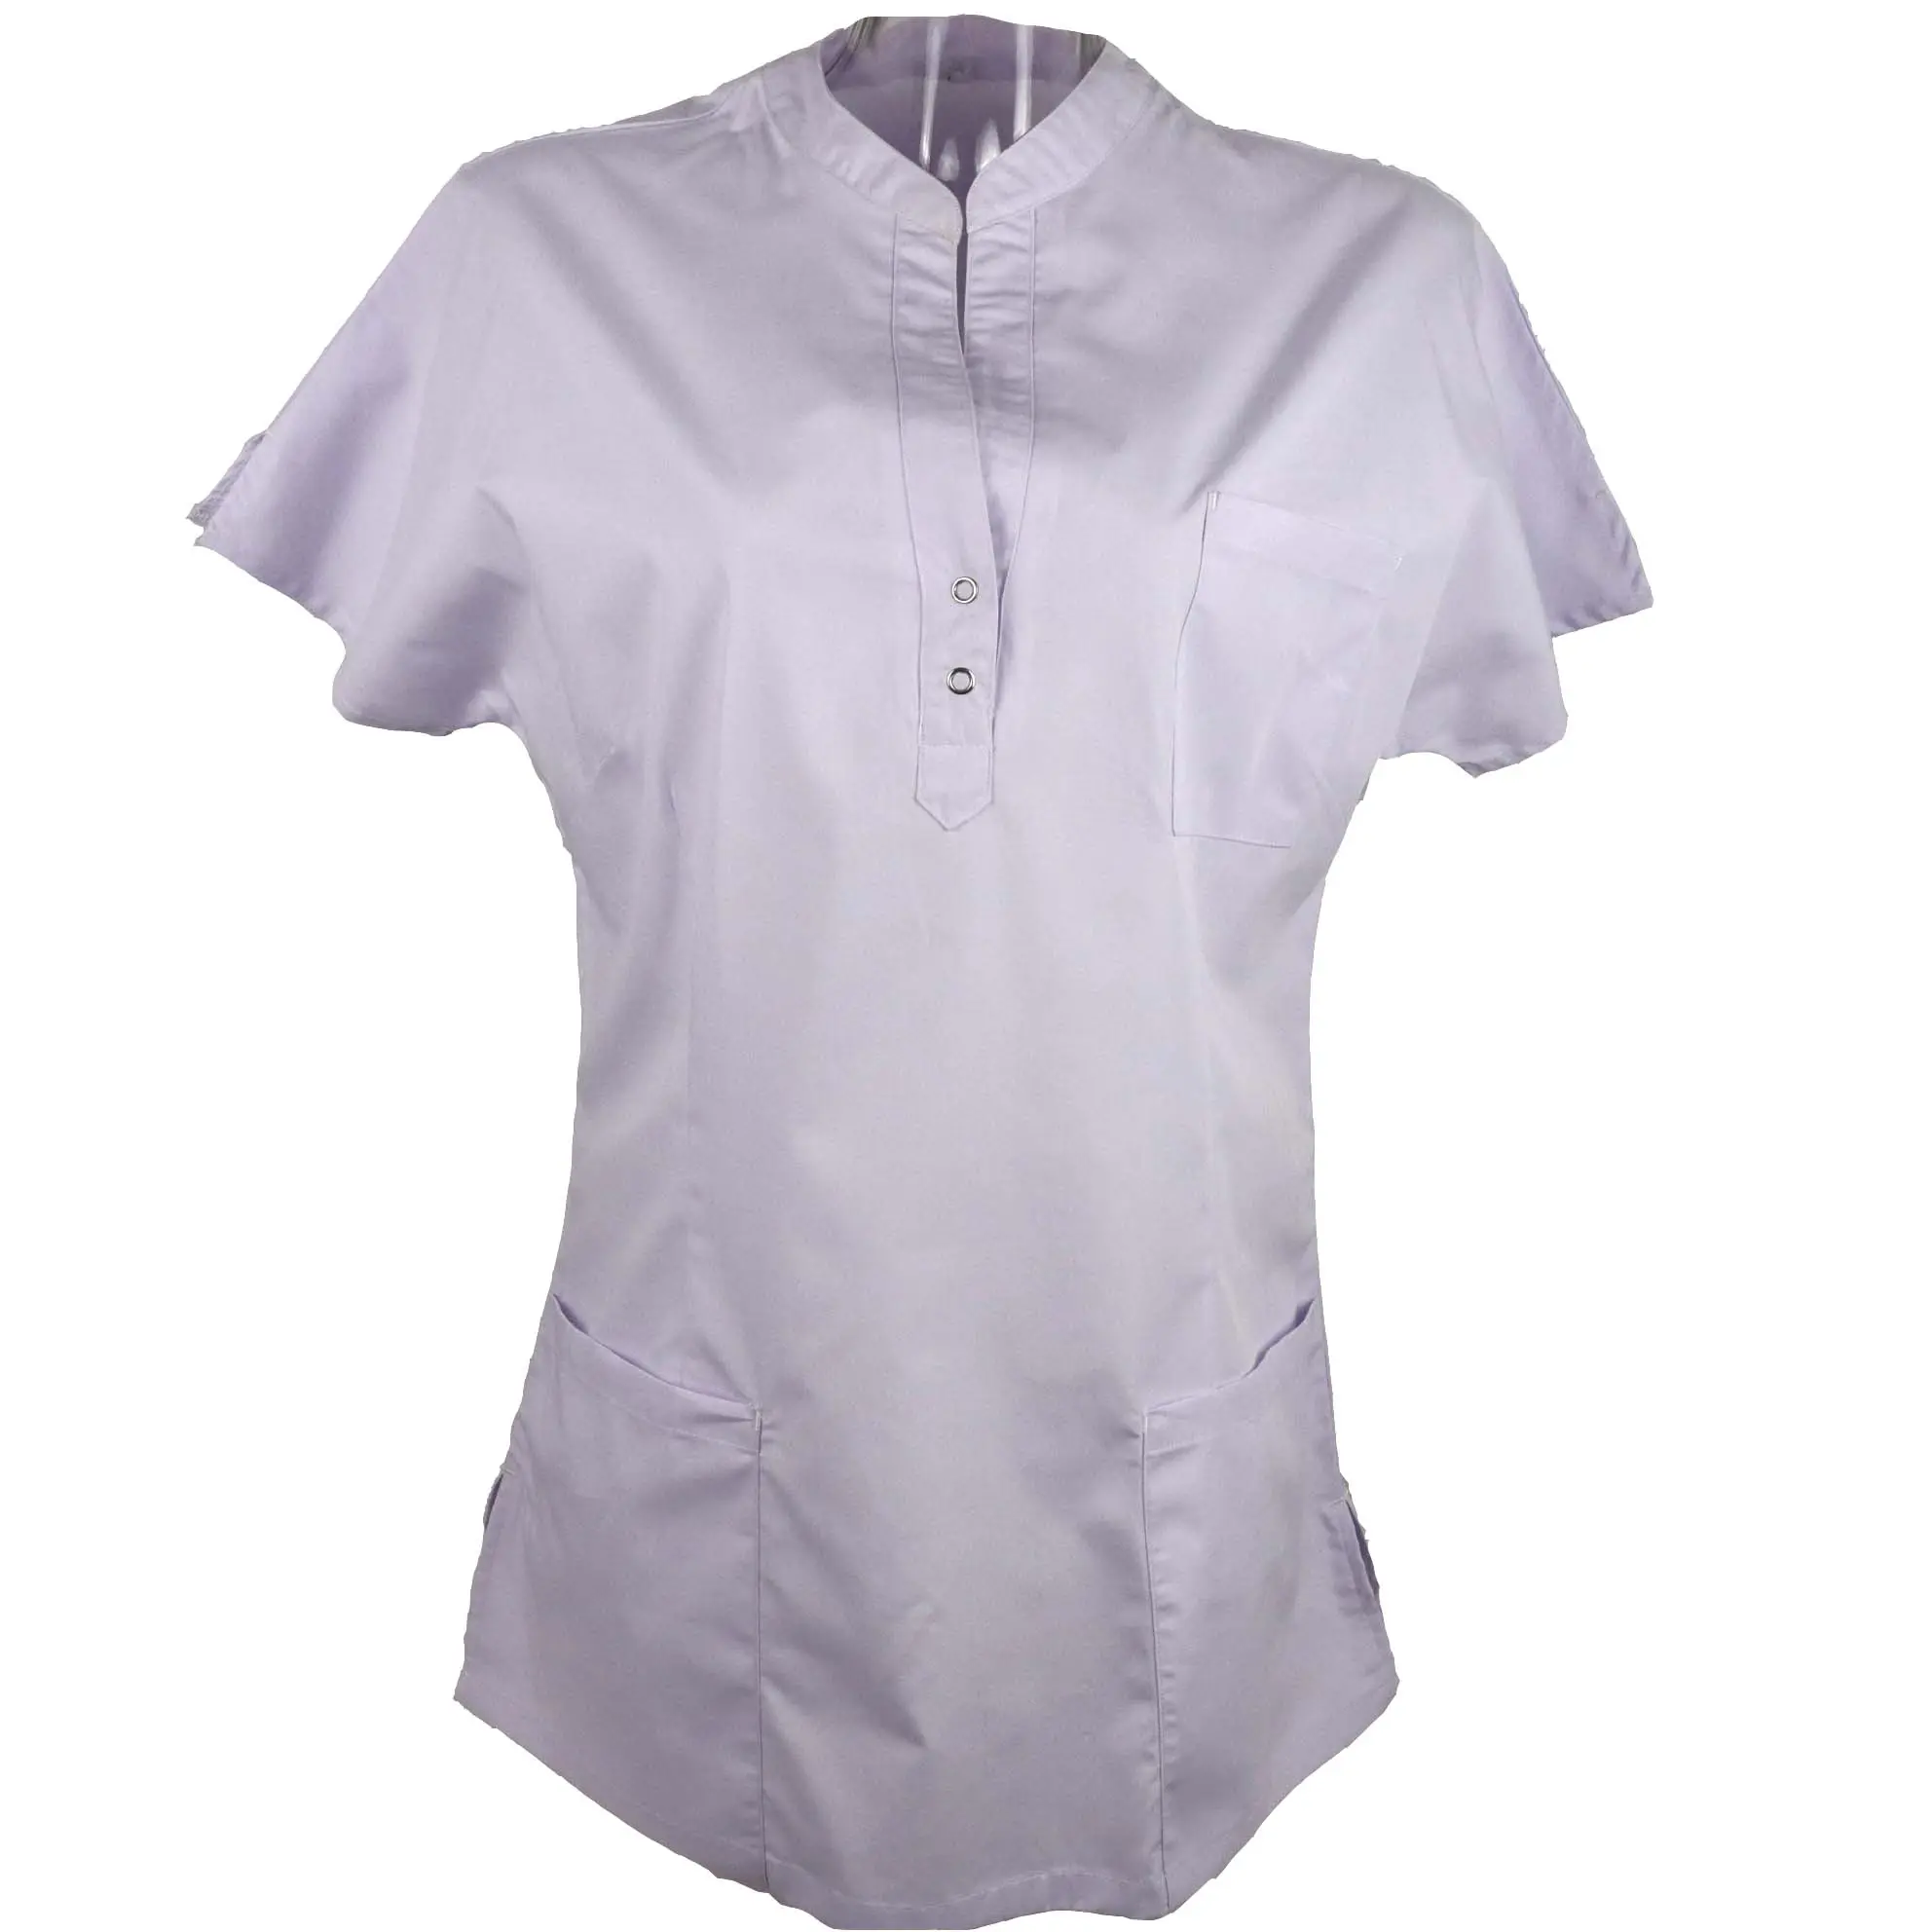 Camiseta blanca con botones de diseño elegante, uniformes de belleza para médicos, enfermeras y dentales